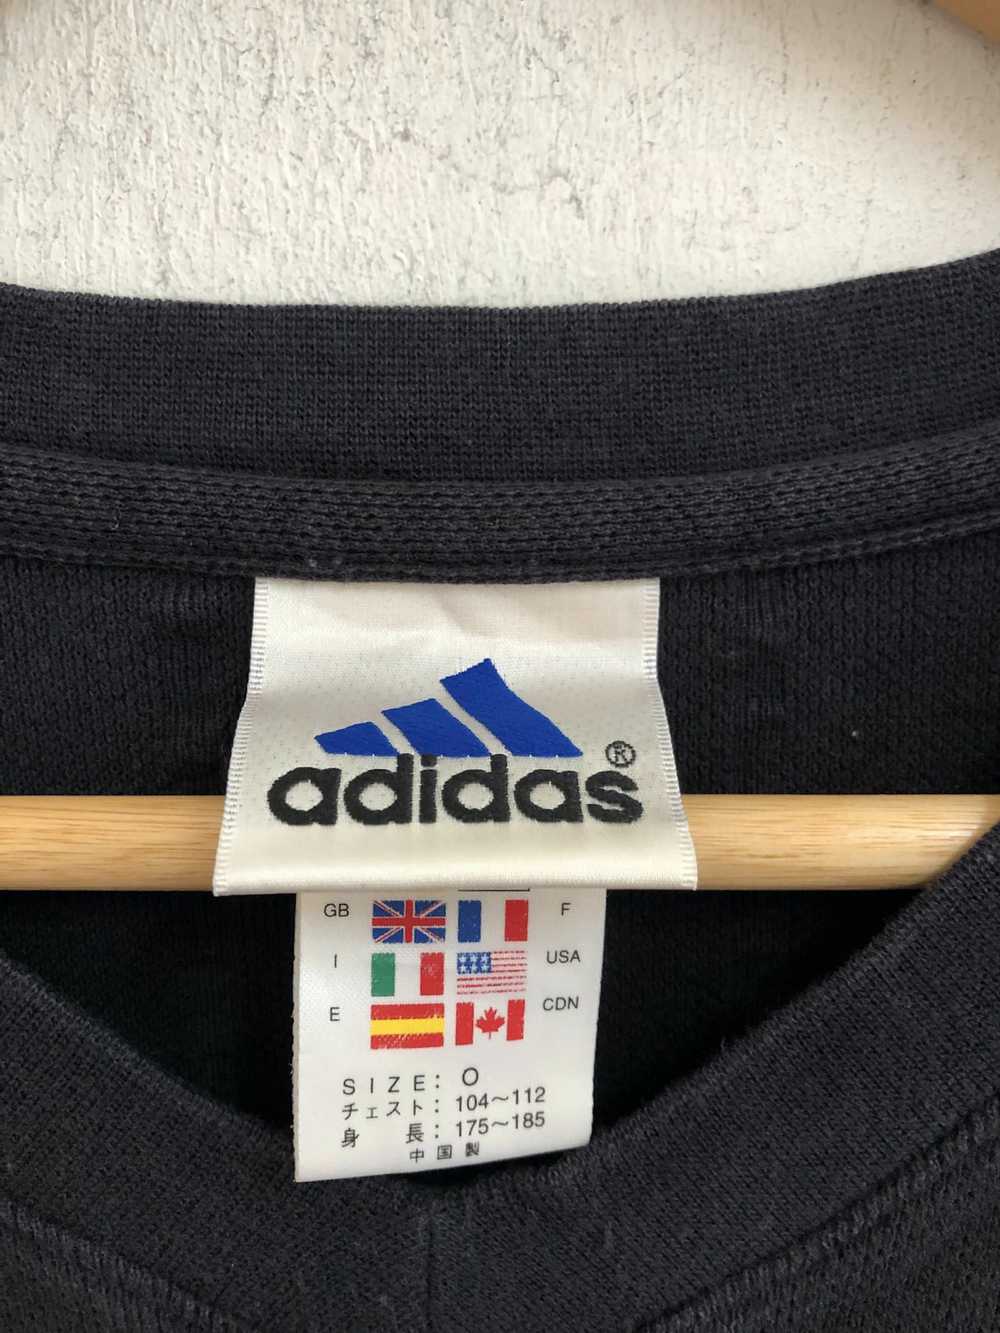 Adidas adidas vintage RMCF Sweatshirt football cl… - image 3